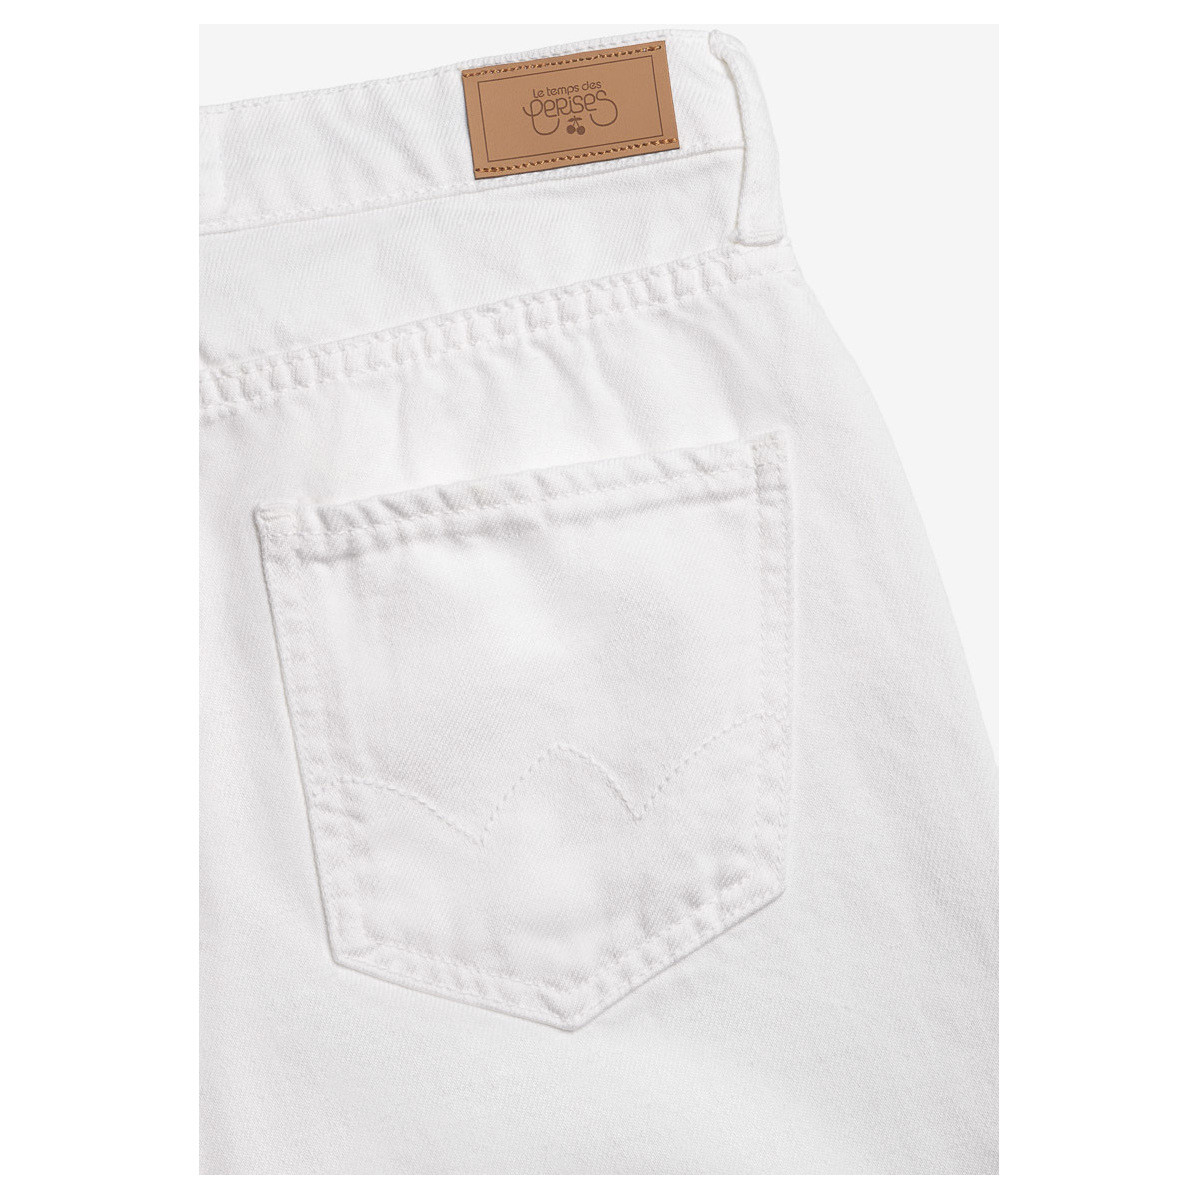 Le Temps des Cerises Blanc Cosa boyfit 7/8ème jeans blanc jWaBftfx